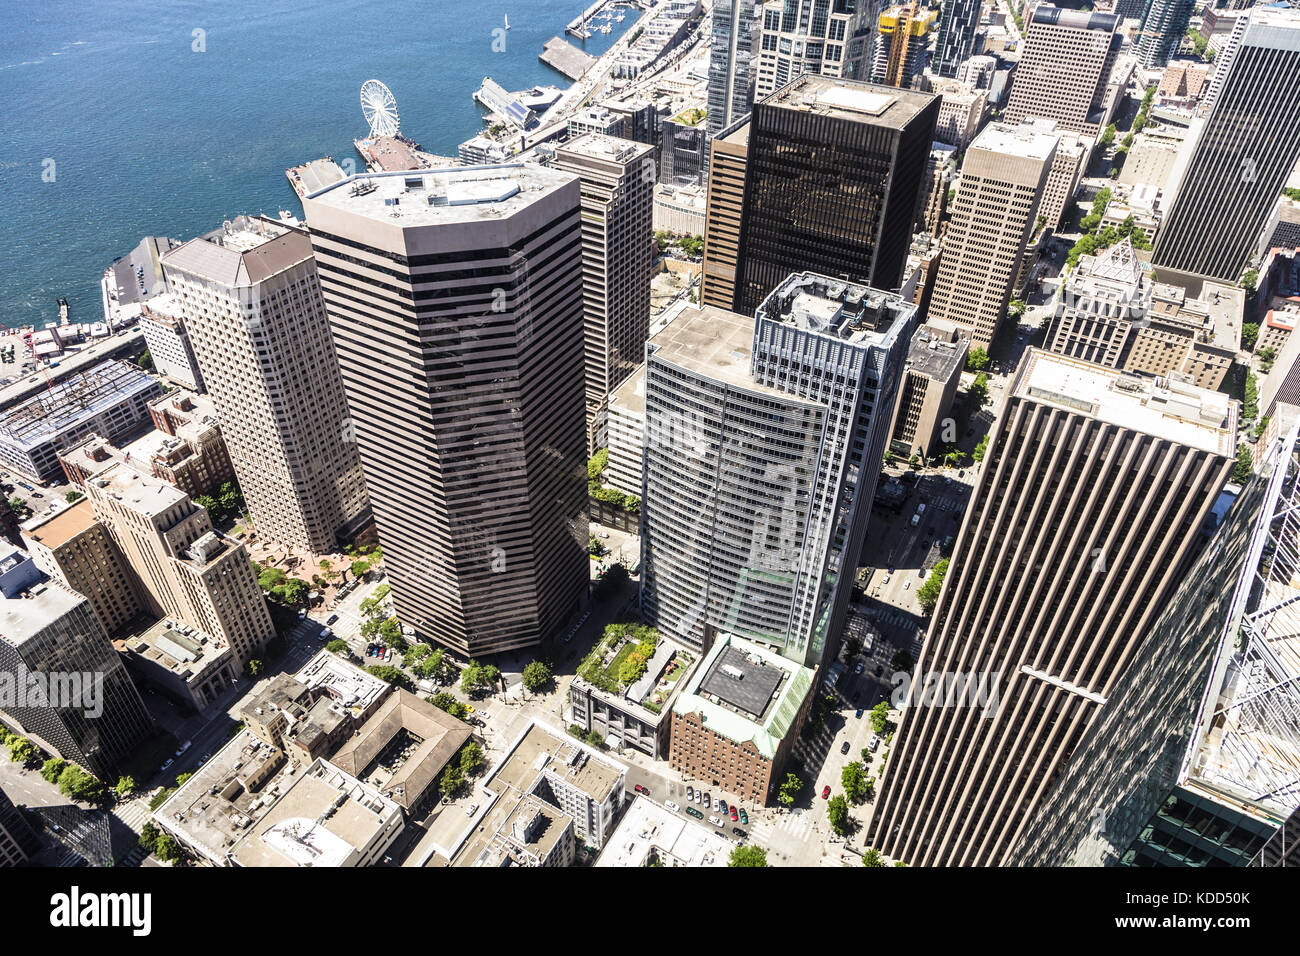 Vista aérea del distrito financiero y de negocios de Seattle en la ciudad más grande del estado de Washington, en el noroeste de los Estados Unidos. Foto de stock